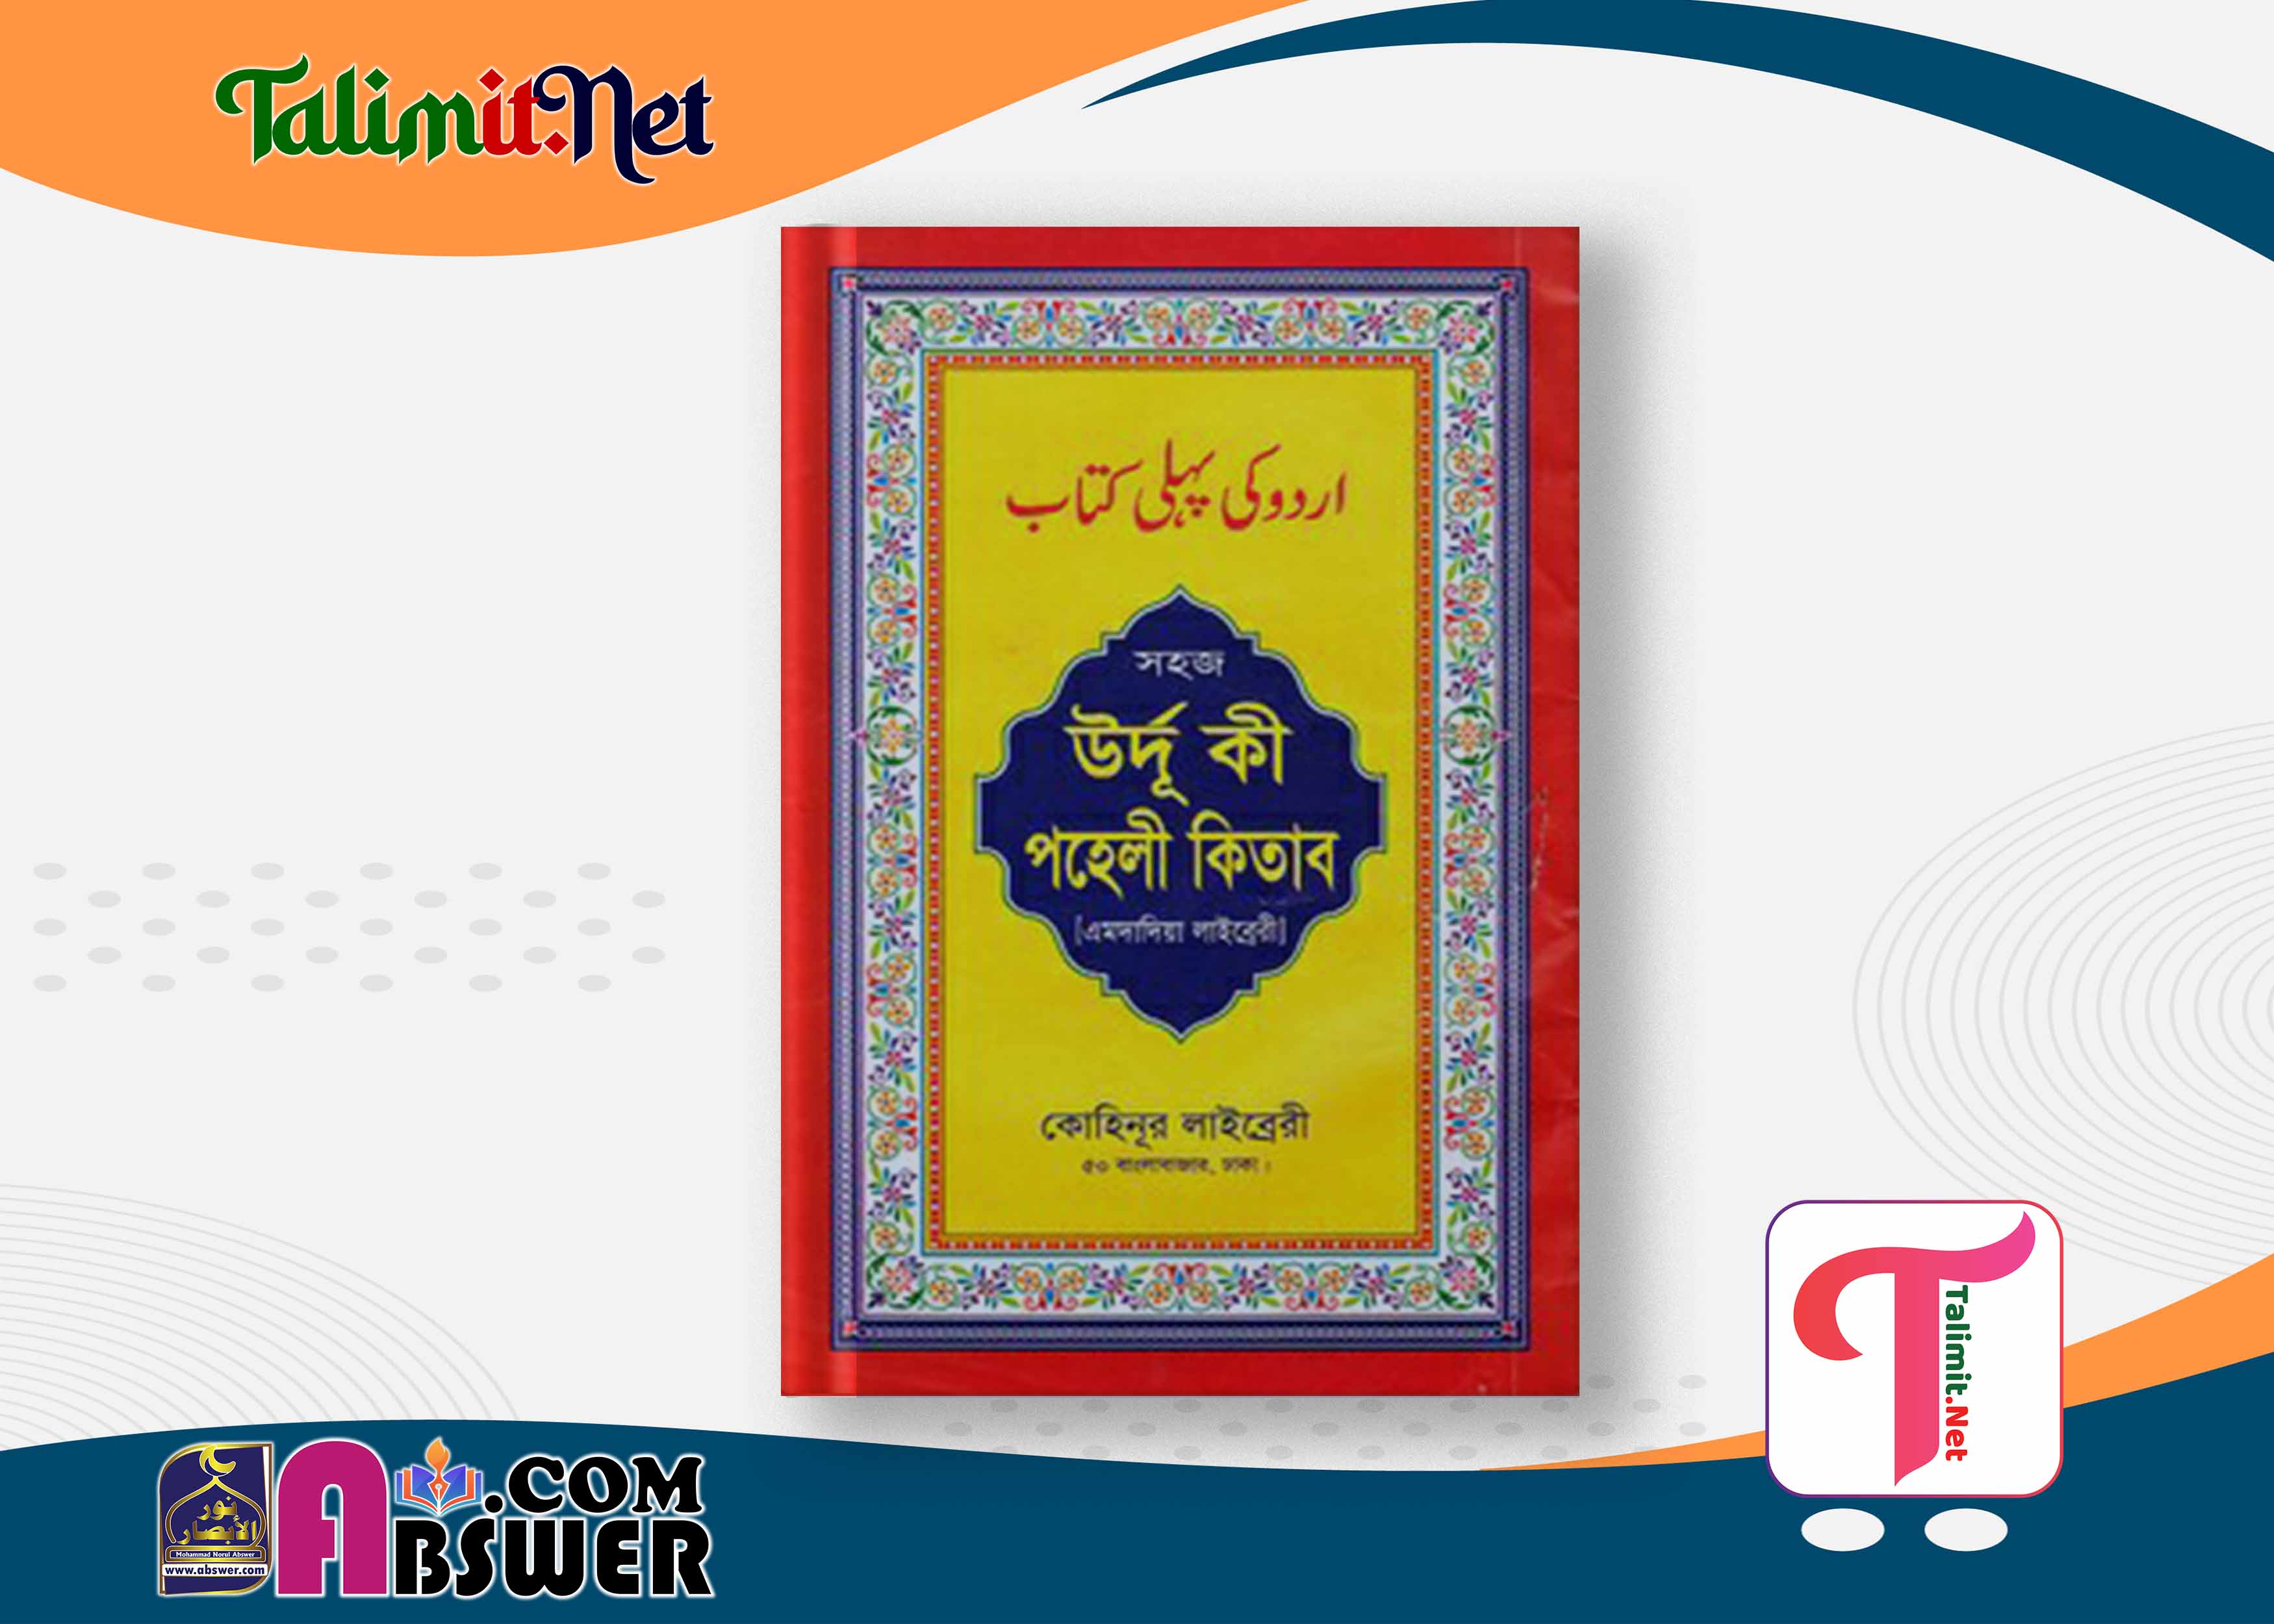 উর্দু কি পহেলী কিতাব দরসে নিজামী বই পিডিএফ - Urdu Ki Pehli Kitab Darse Nizami Book Pdf